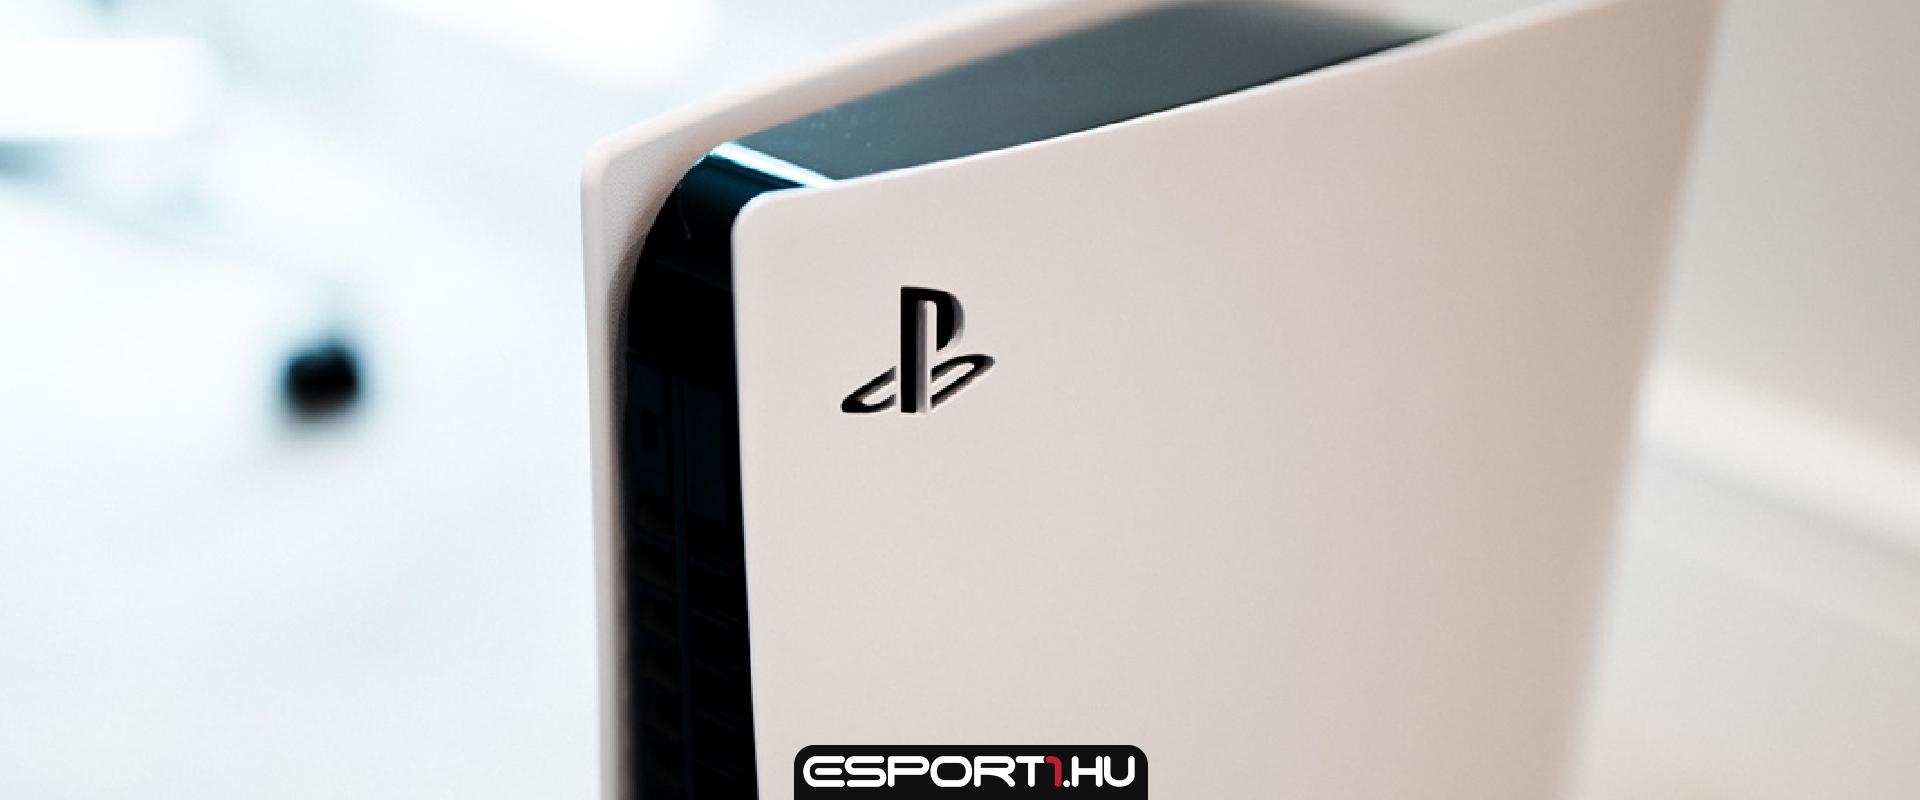 Teljesítsd az MI kihívást és nyerj egy vadiúj PlayStation 5 konzolt!